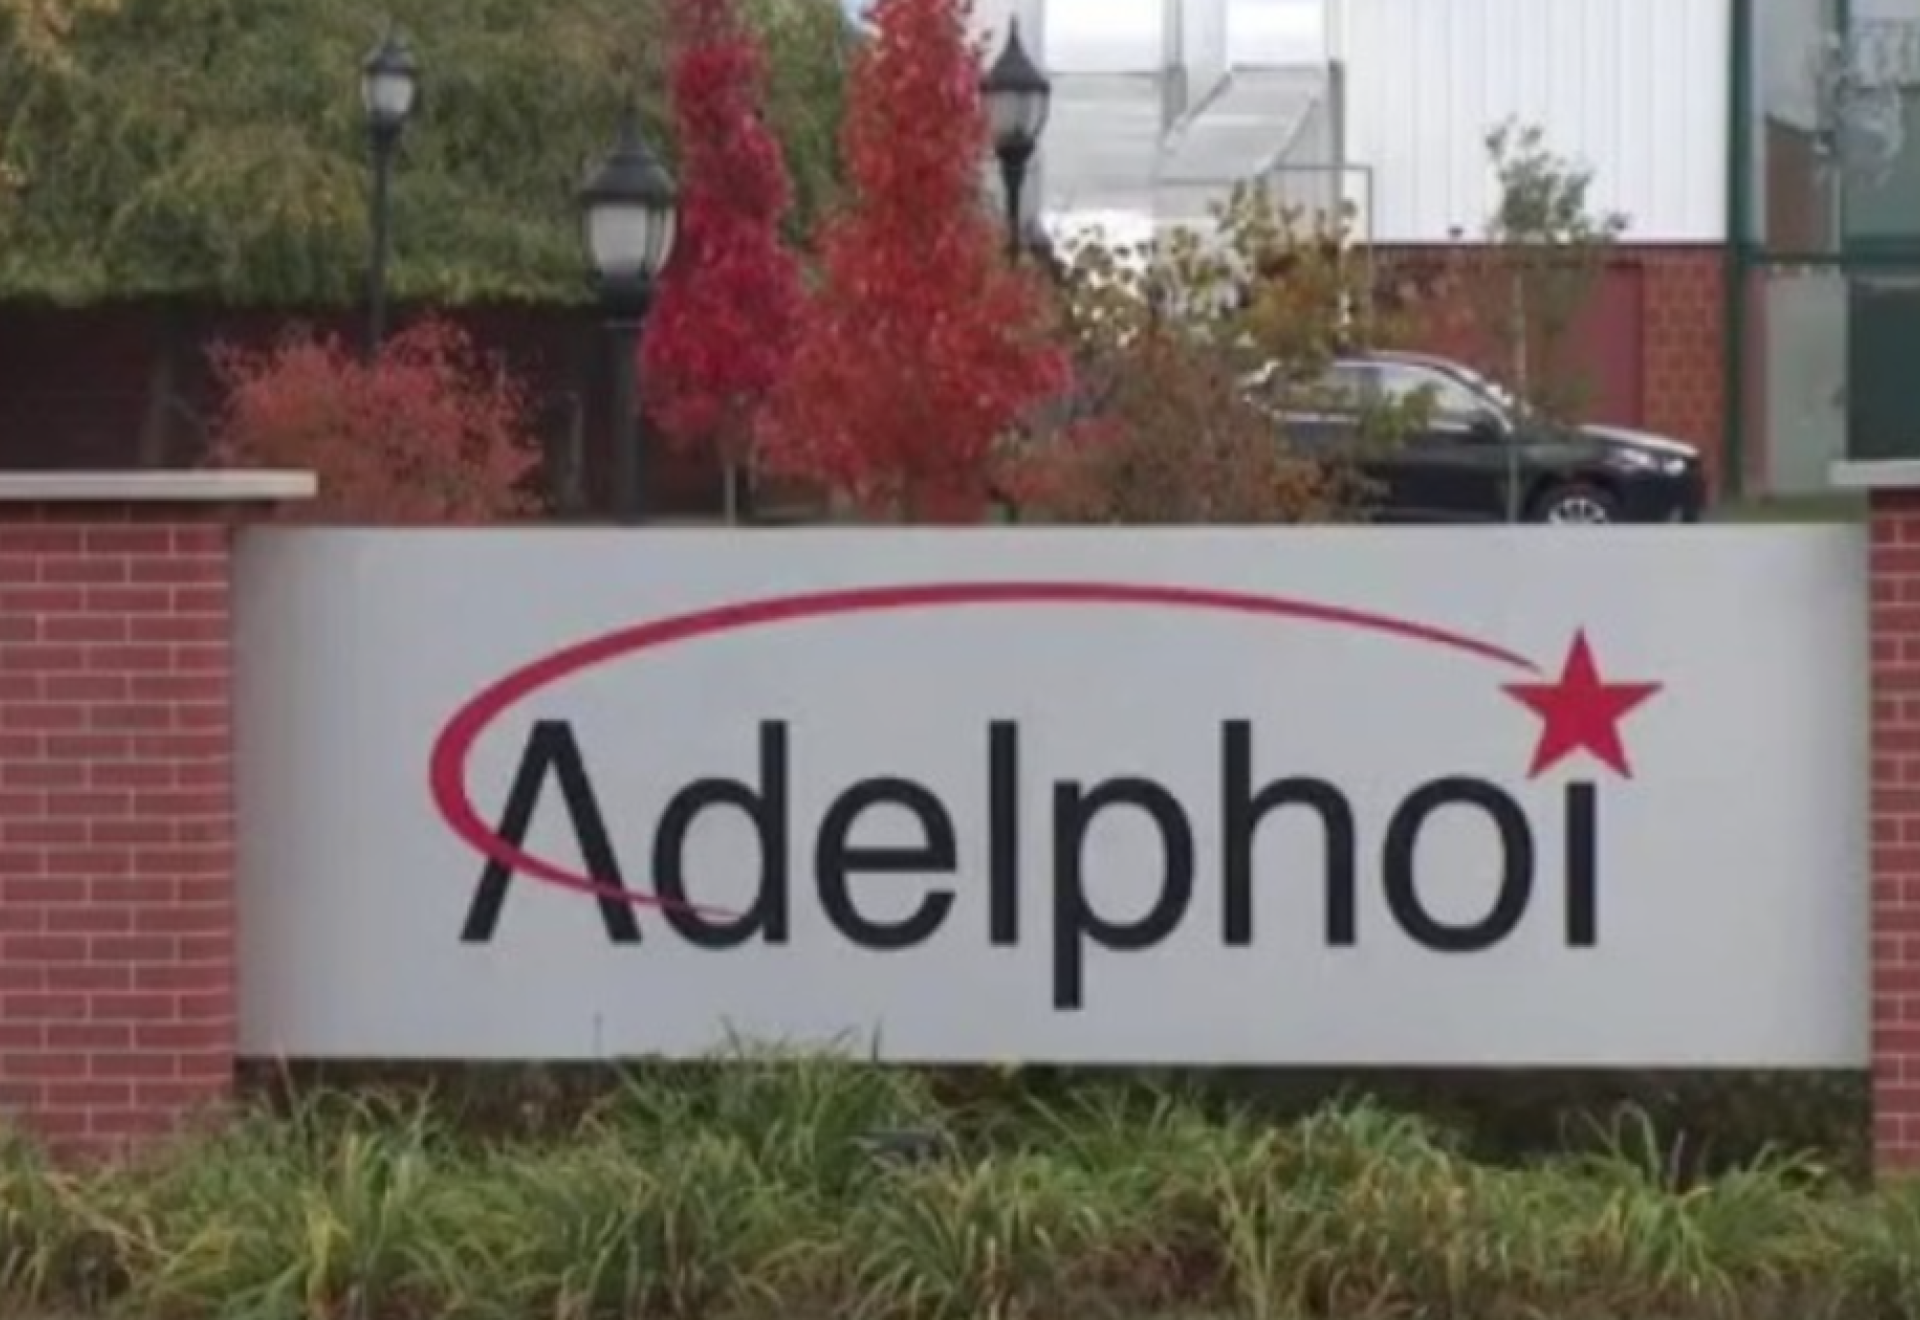 Adelphoi sign